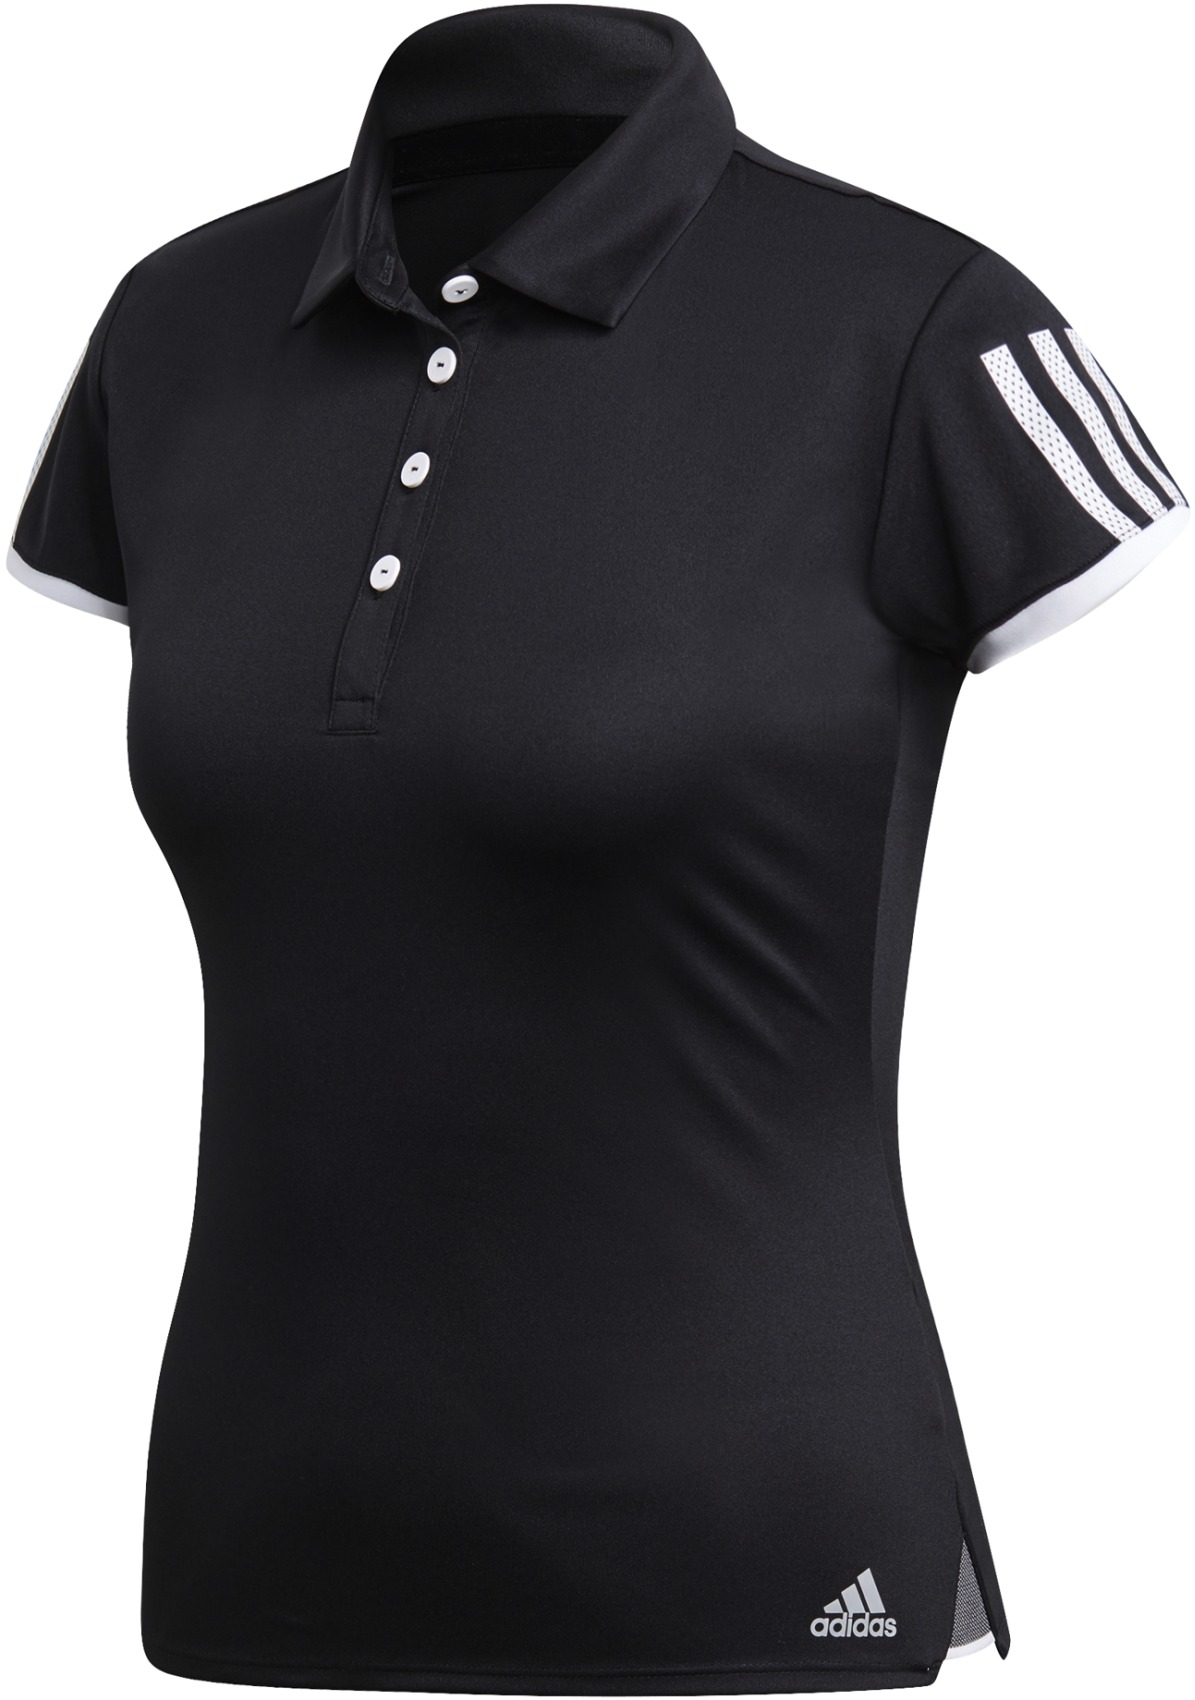 Embroidered Black Adidas® Polo Shirt